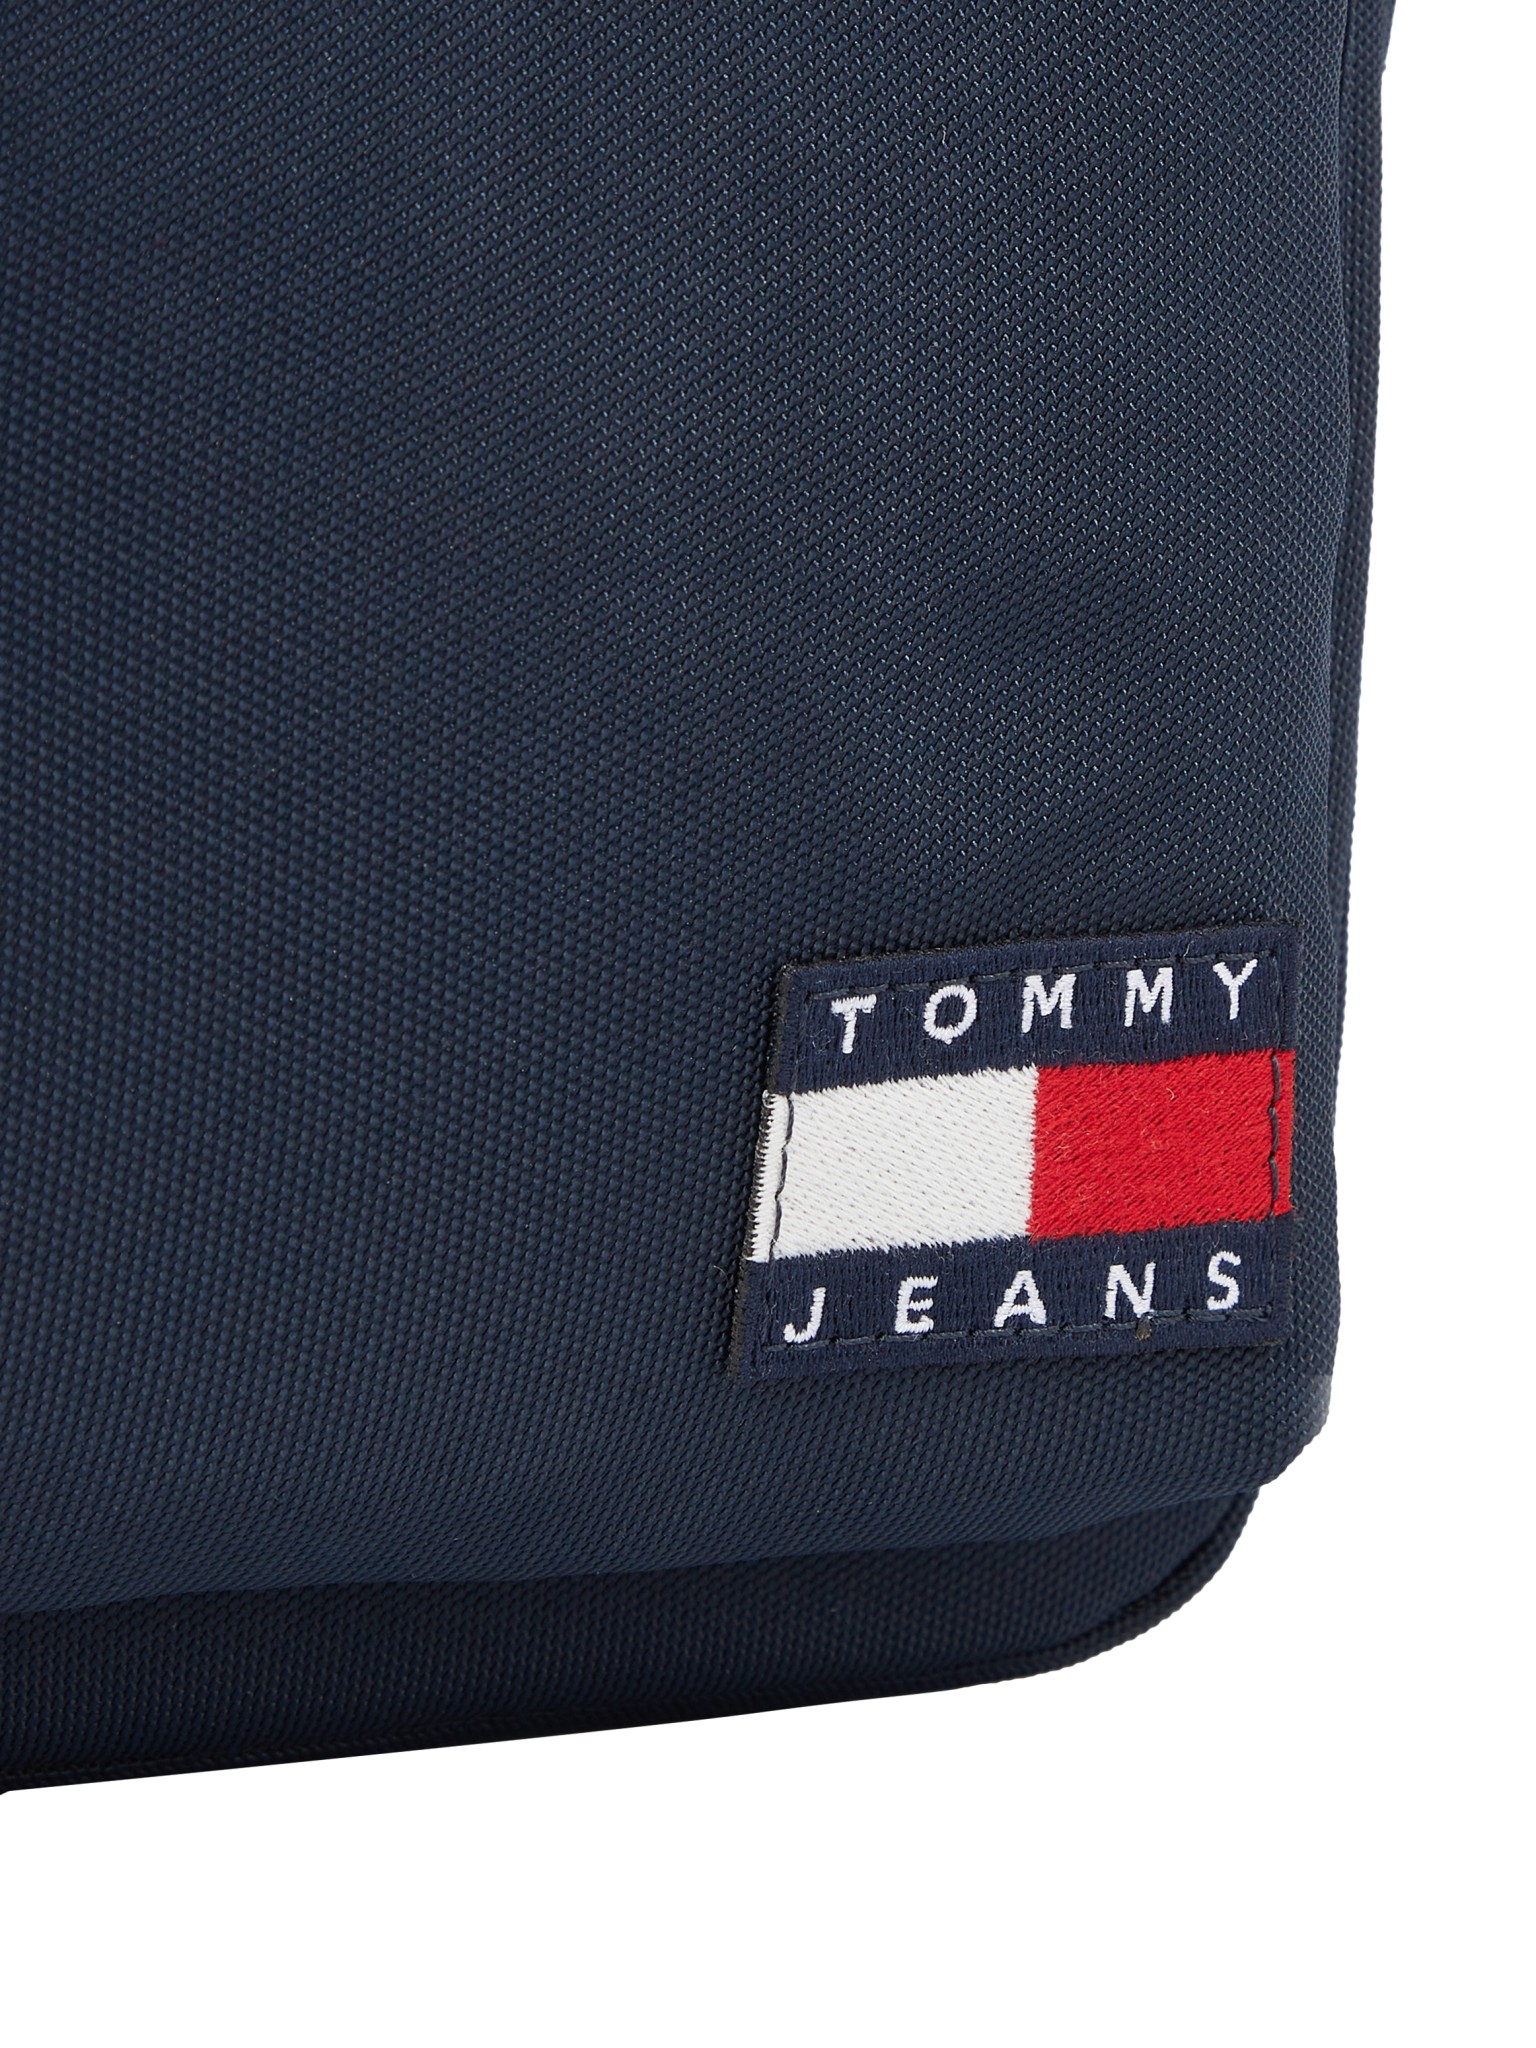 TOMMY JEANS Essential kleine Reportertasche mit Logo 10735512